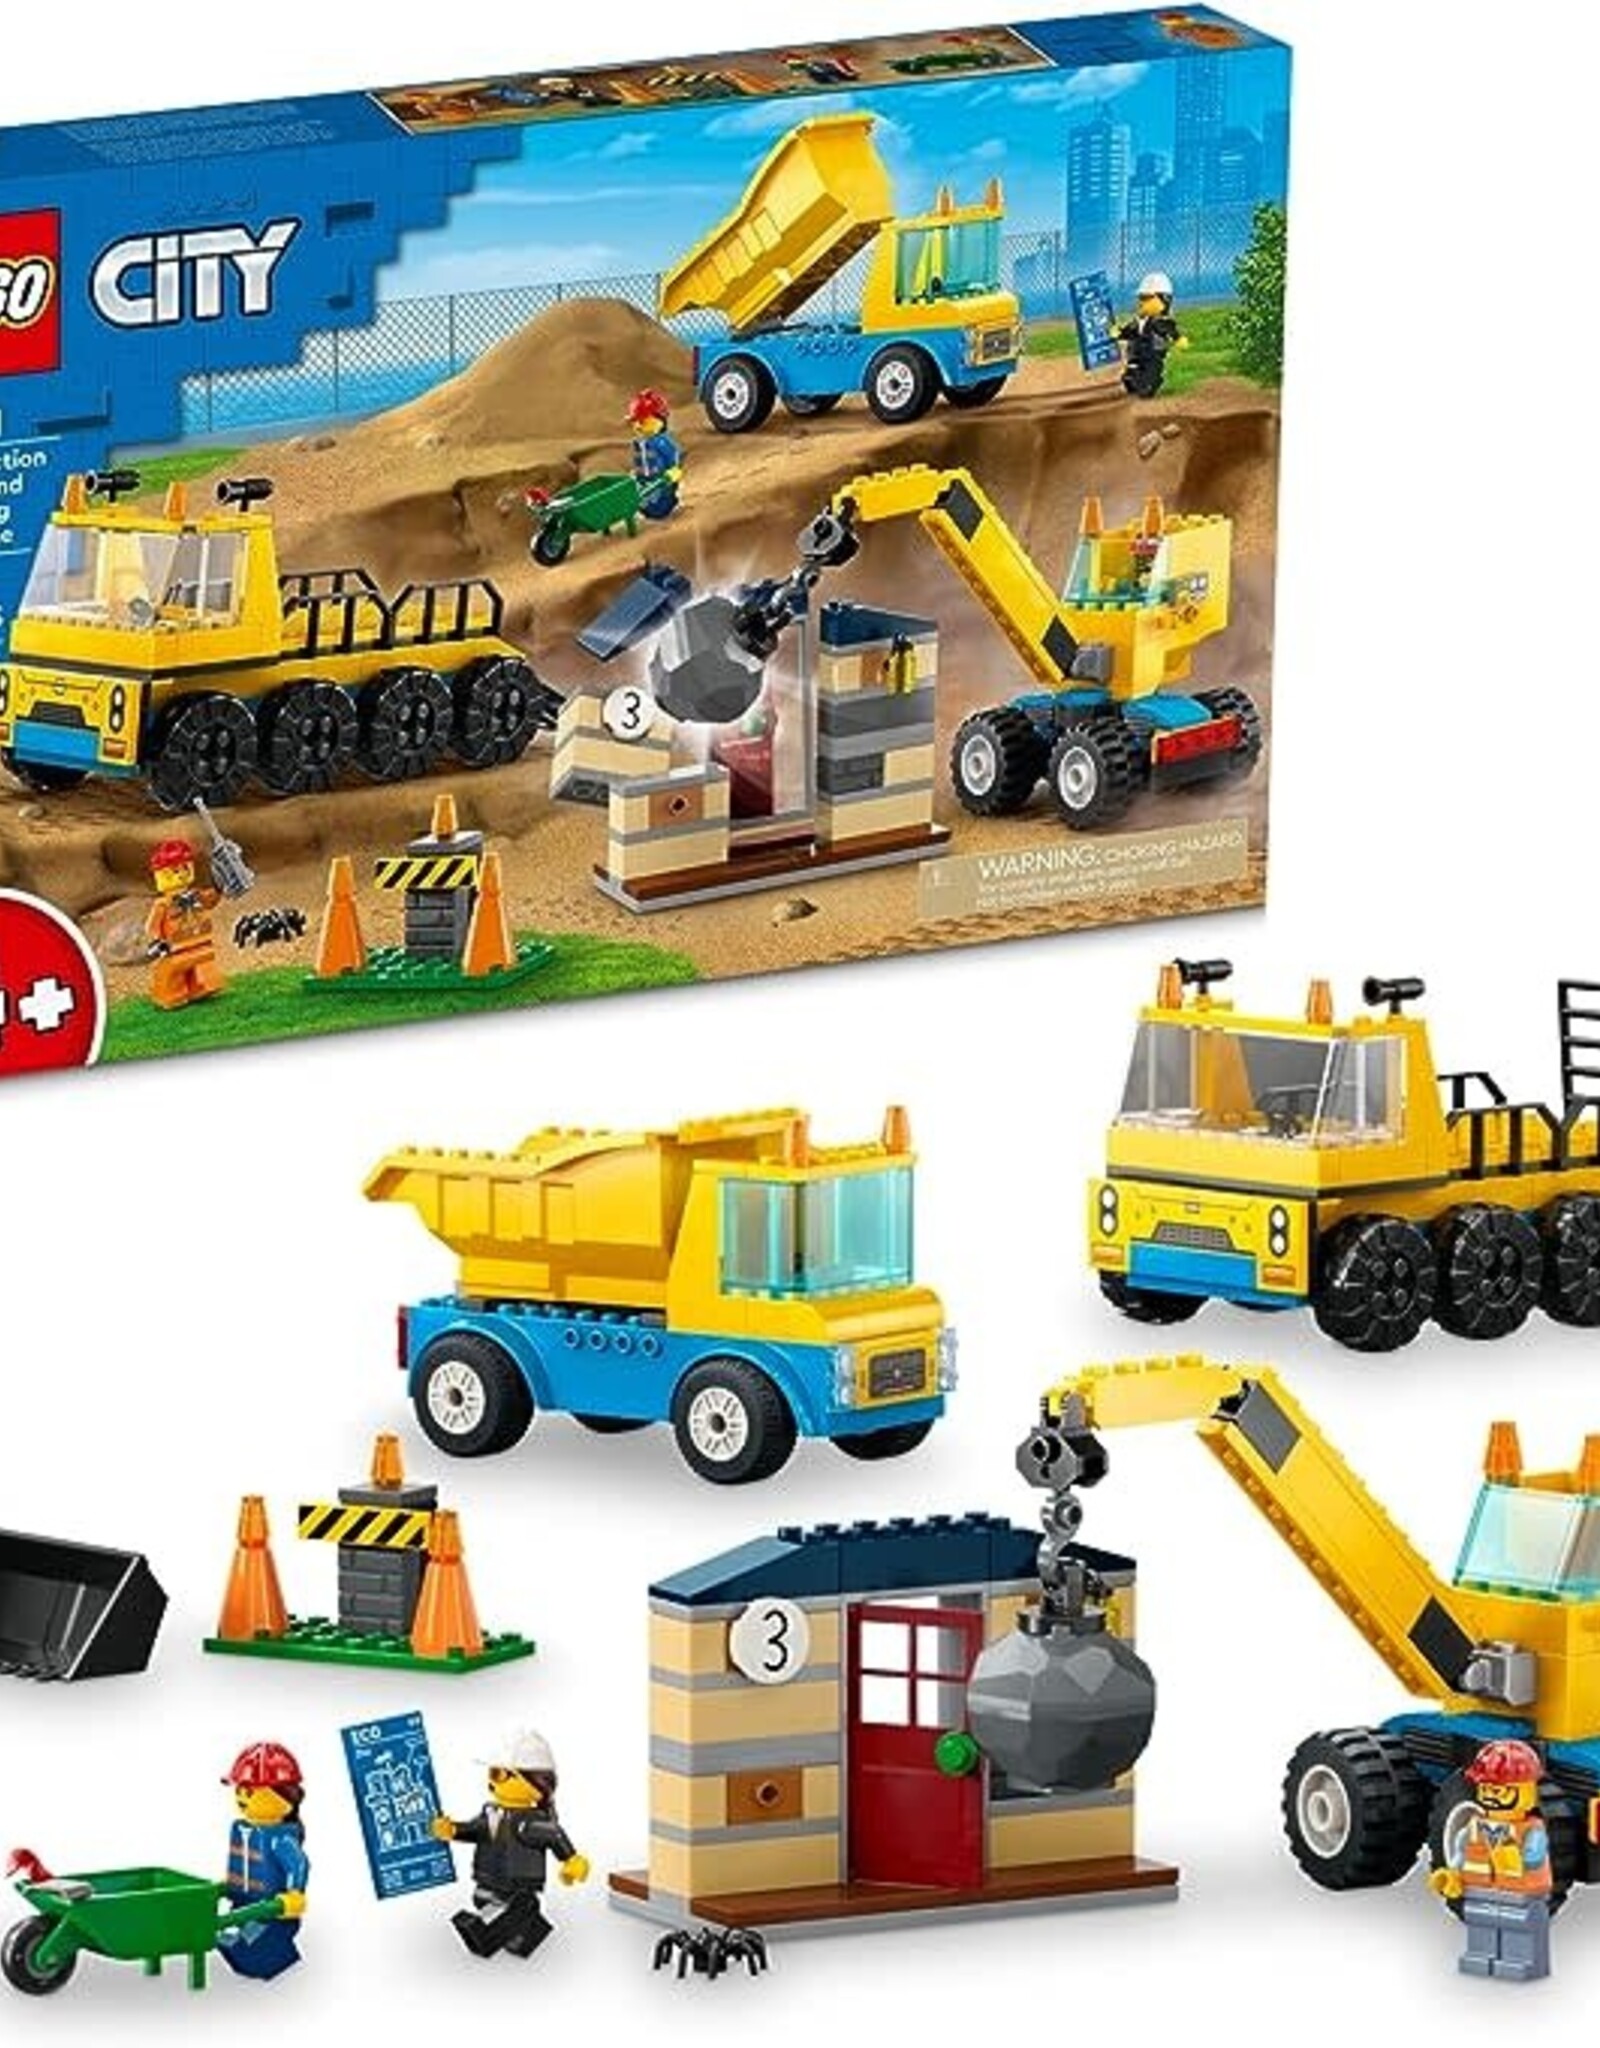 LEGO City Lego Construction Trucks & Wrecking Ball Crane